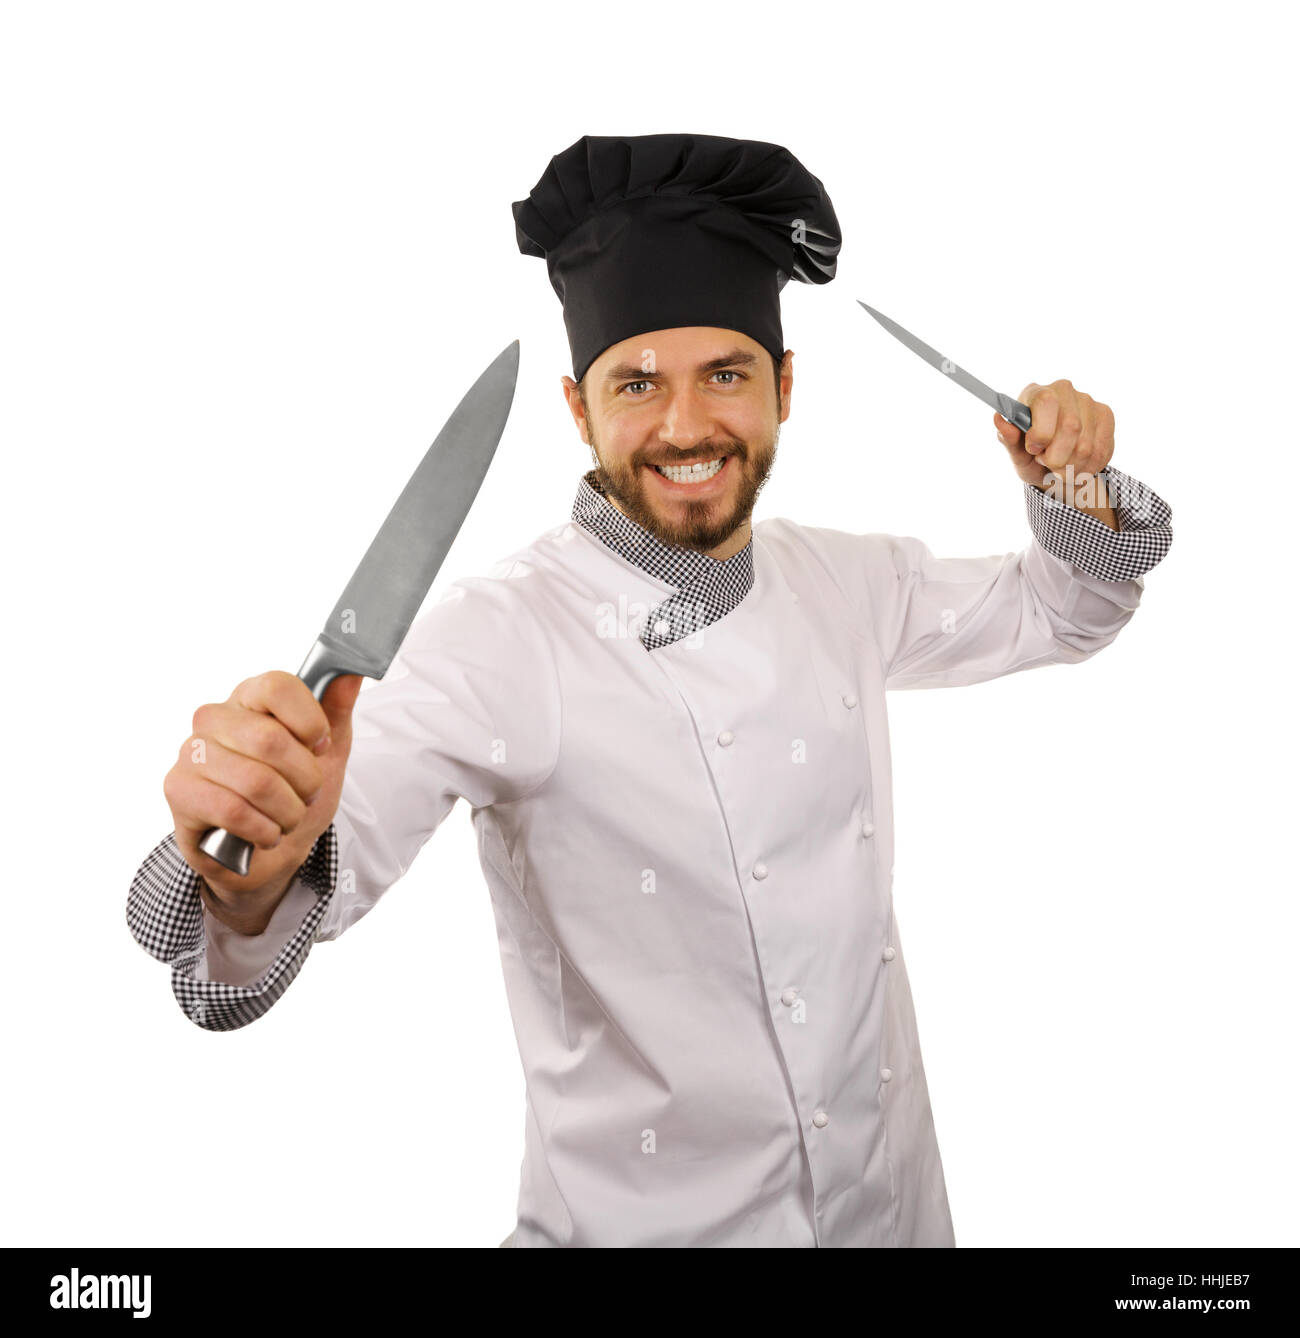 Chef cuisinier avec couteaux en mains isolé sur fond blanc Banque D'Images